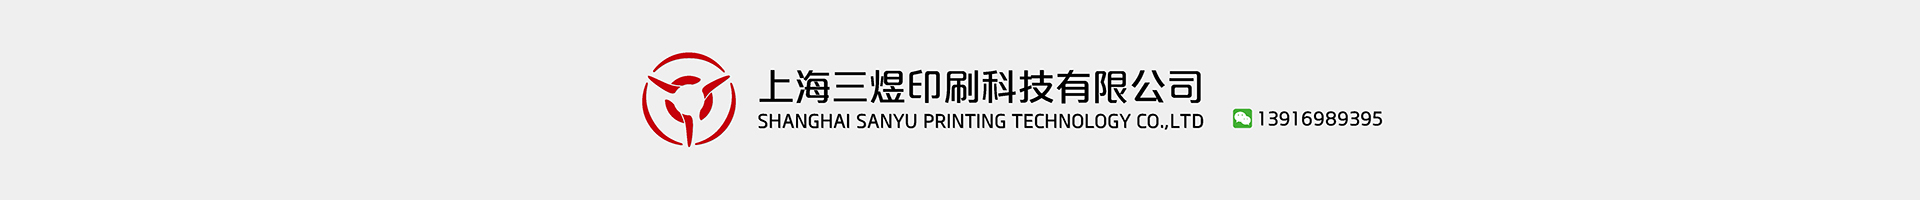 上海三煜印刷科技有限公司